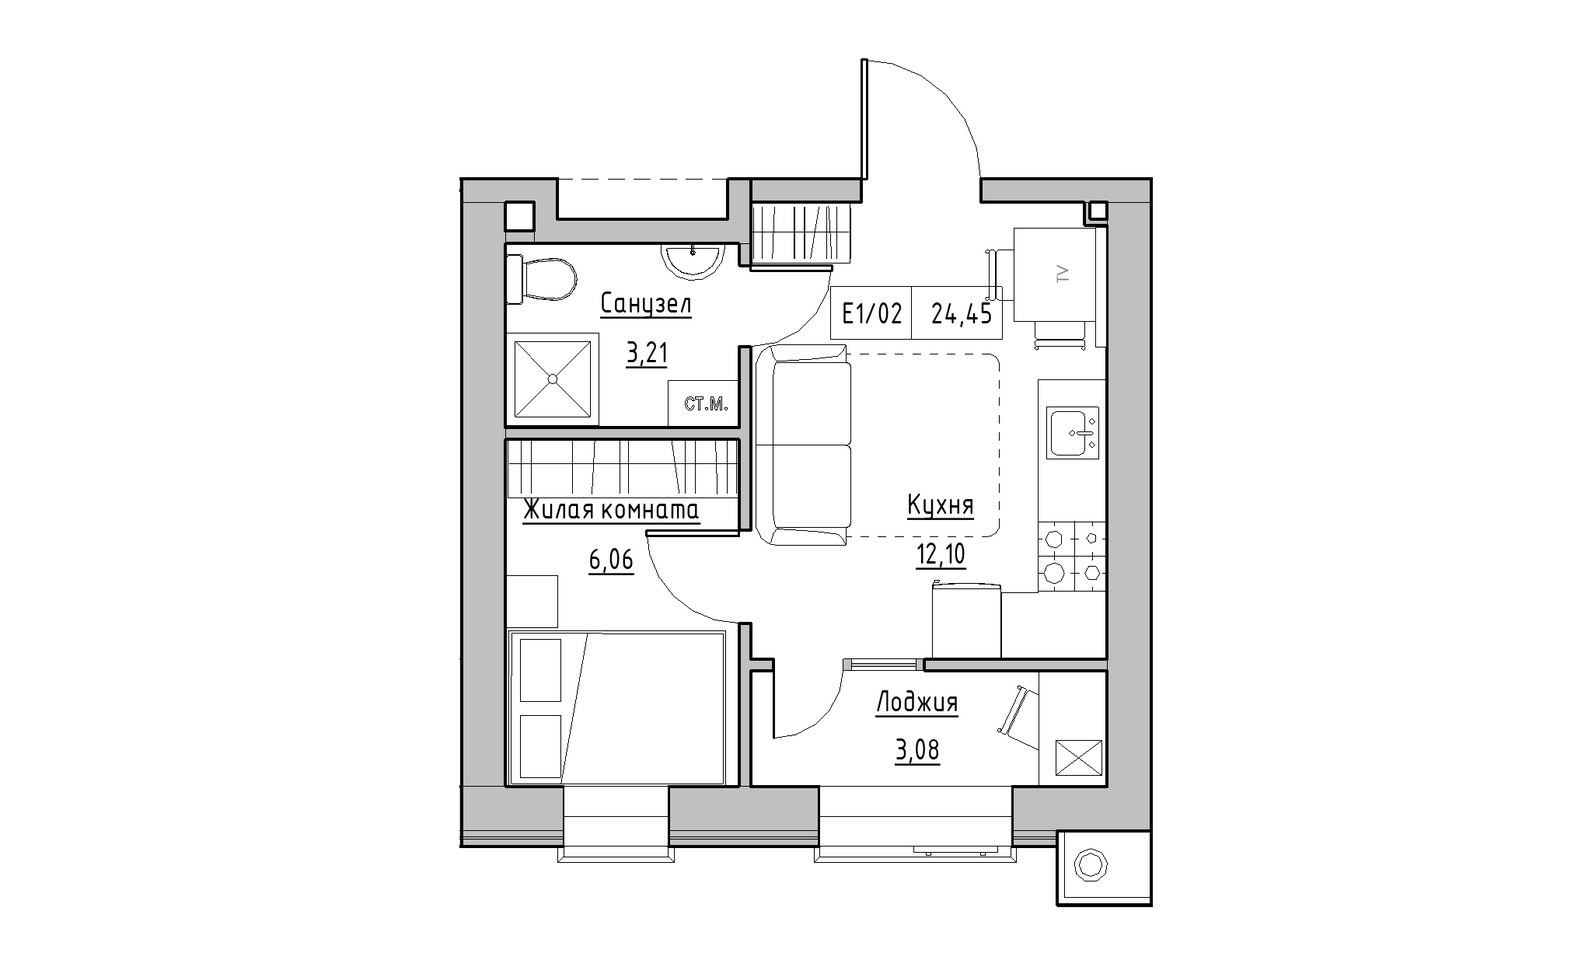 Планування 1-к квартира площею 24.45м2, KS-014-04/0002.